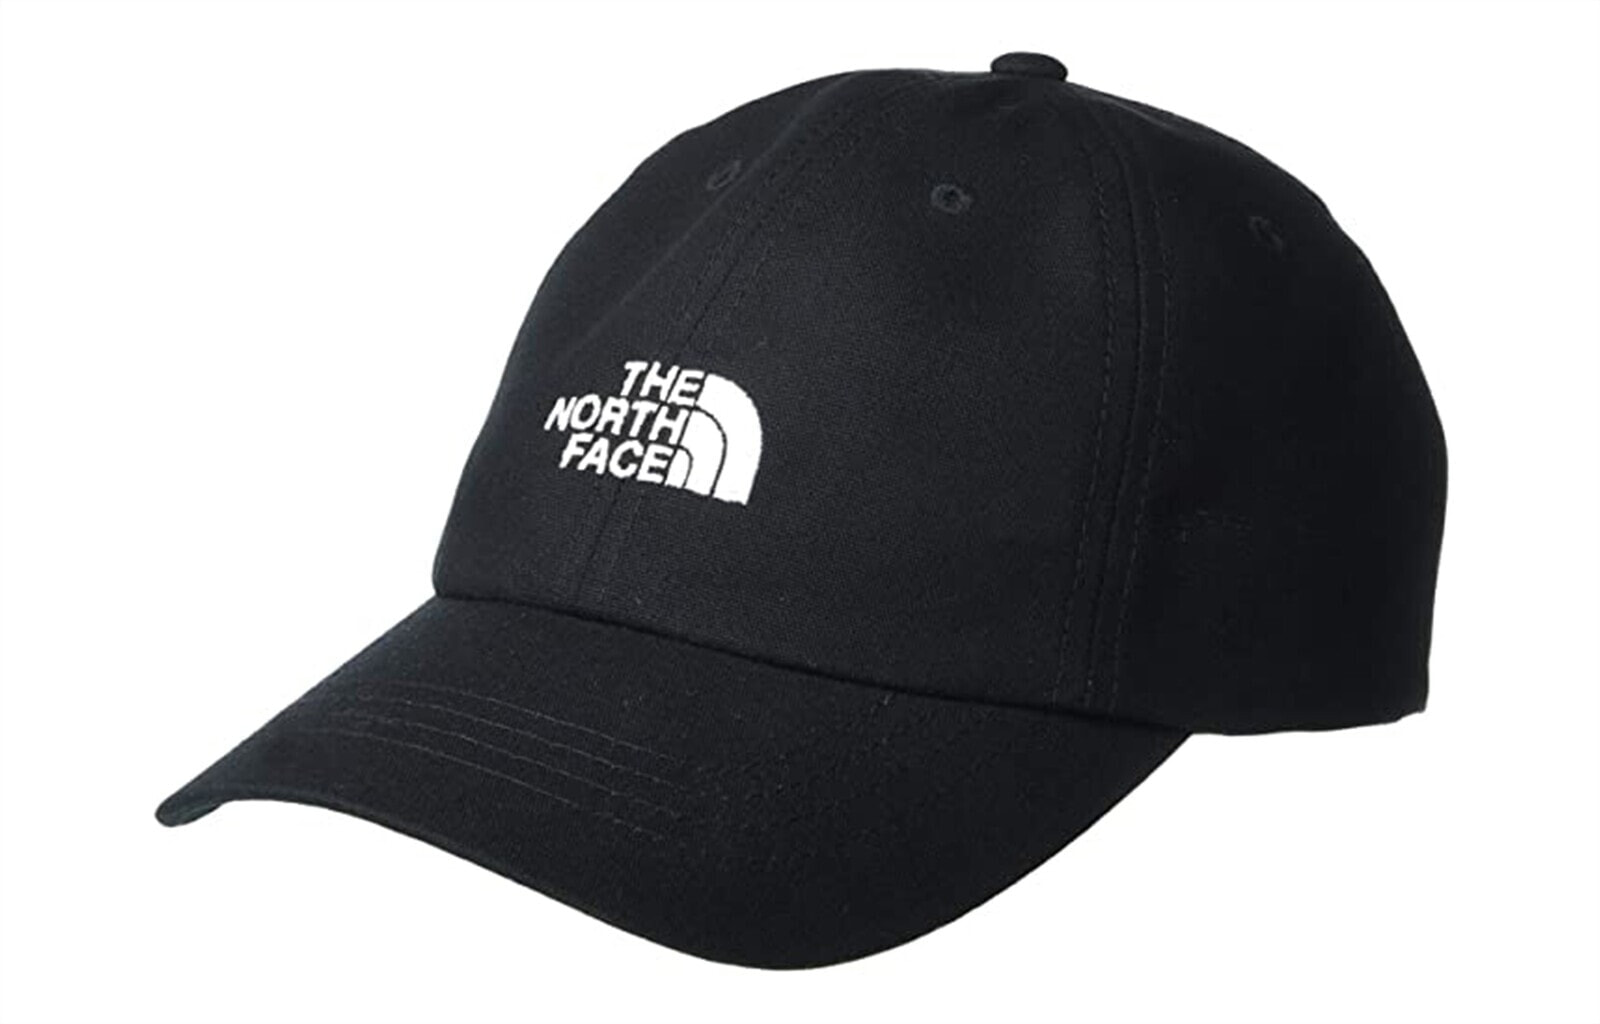 北面THE NORTH FACE 经典刺绣Logo 棒球帽 3SH3 男女同款情侣款 黑色 / Шапка The North Face NF0A3SH3JK3